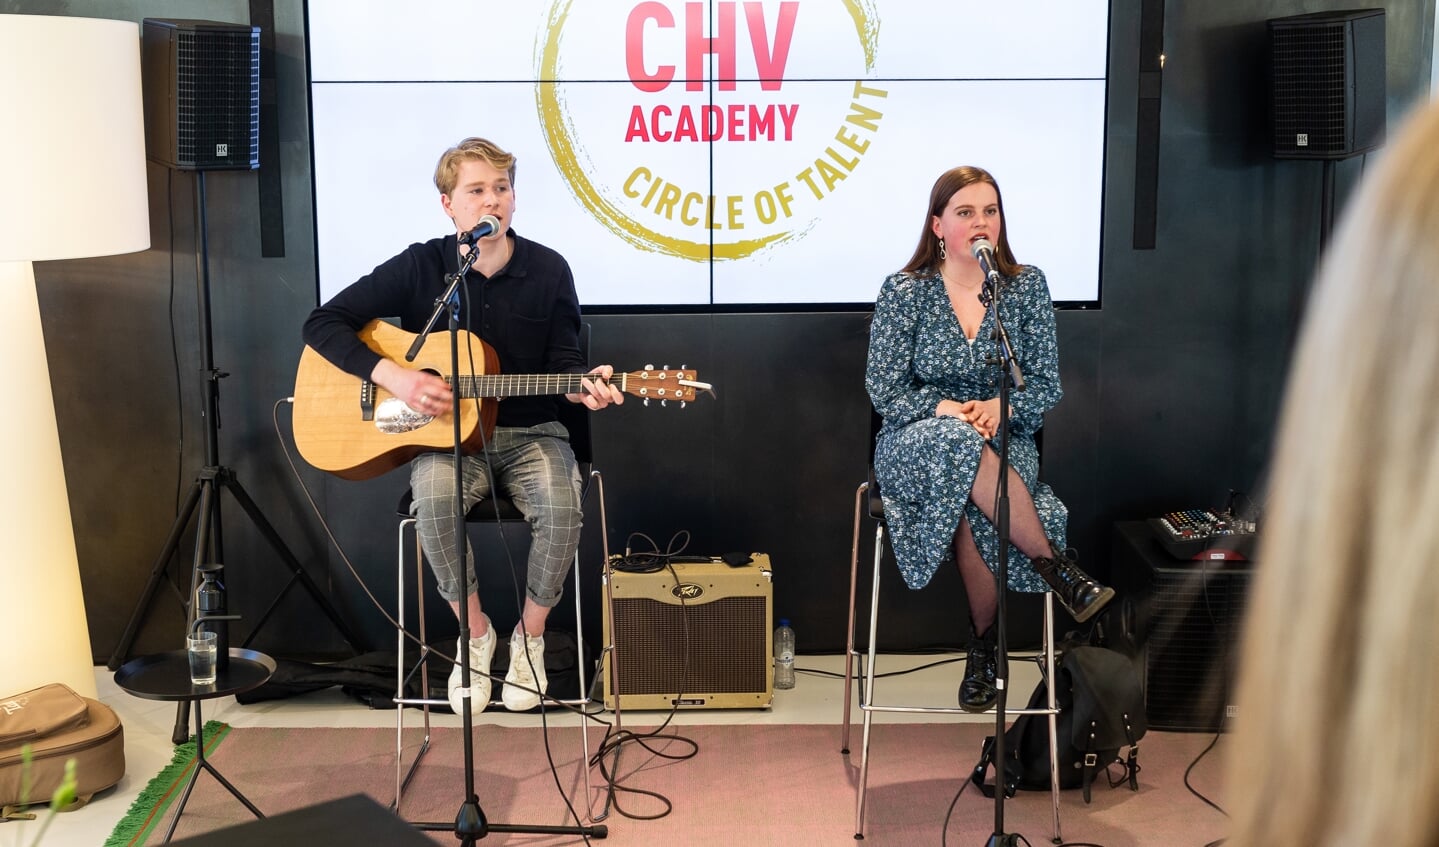 De twee muzikale talenten, Willem Bennenbroek en Rosa van Geffen, traden op tijdens de feestelijke partnermeeting van CHV Academy, Circle of Talent.